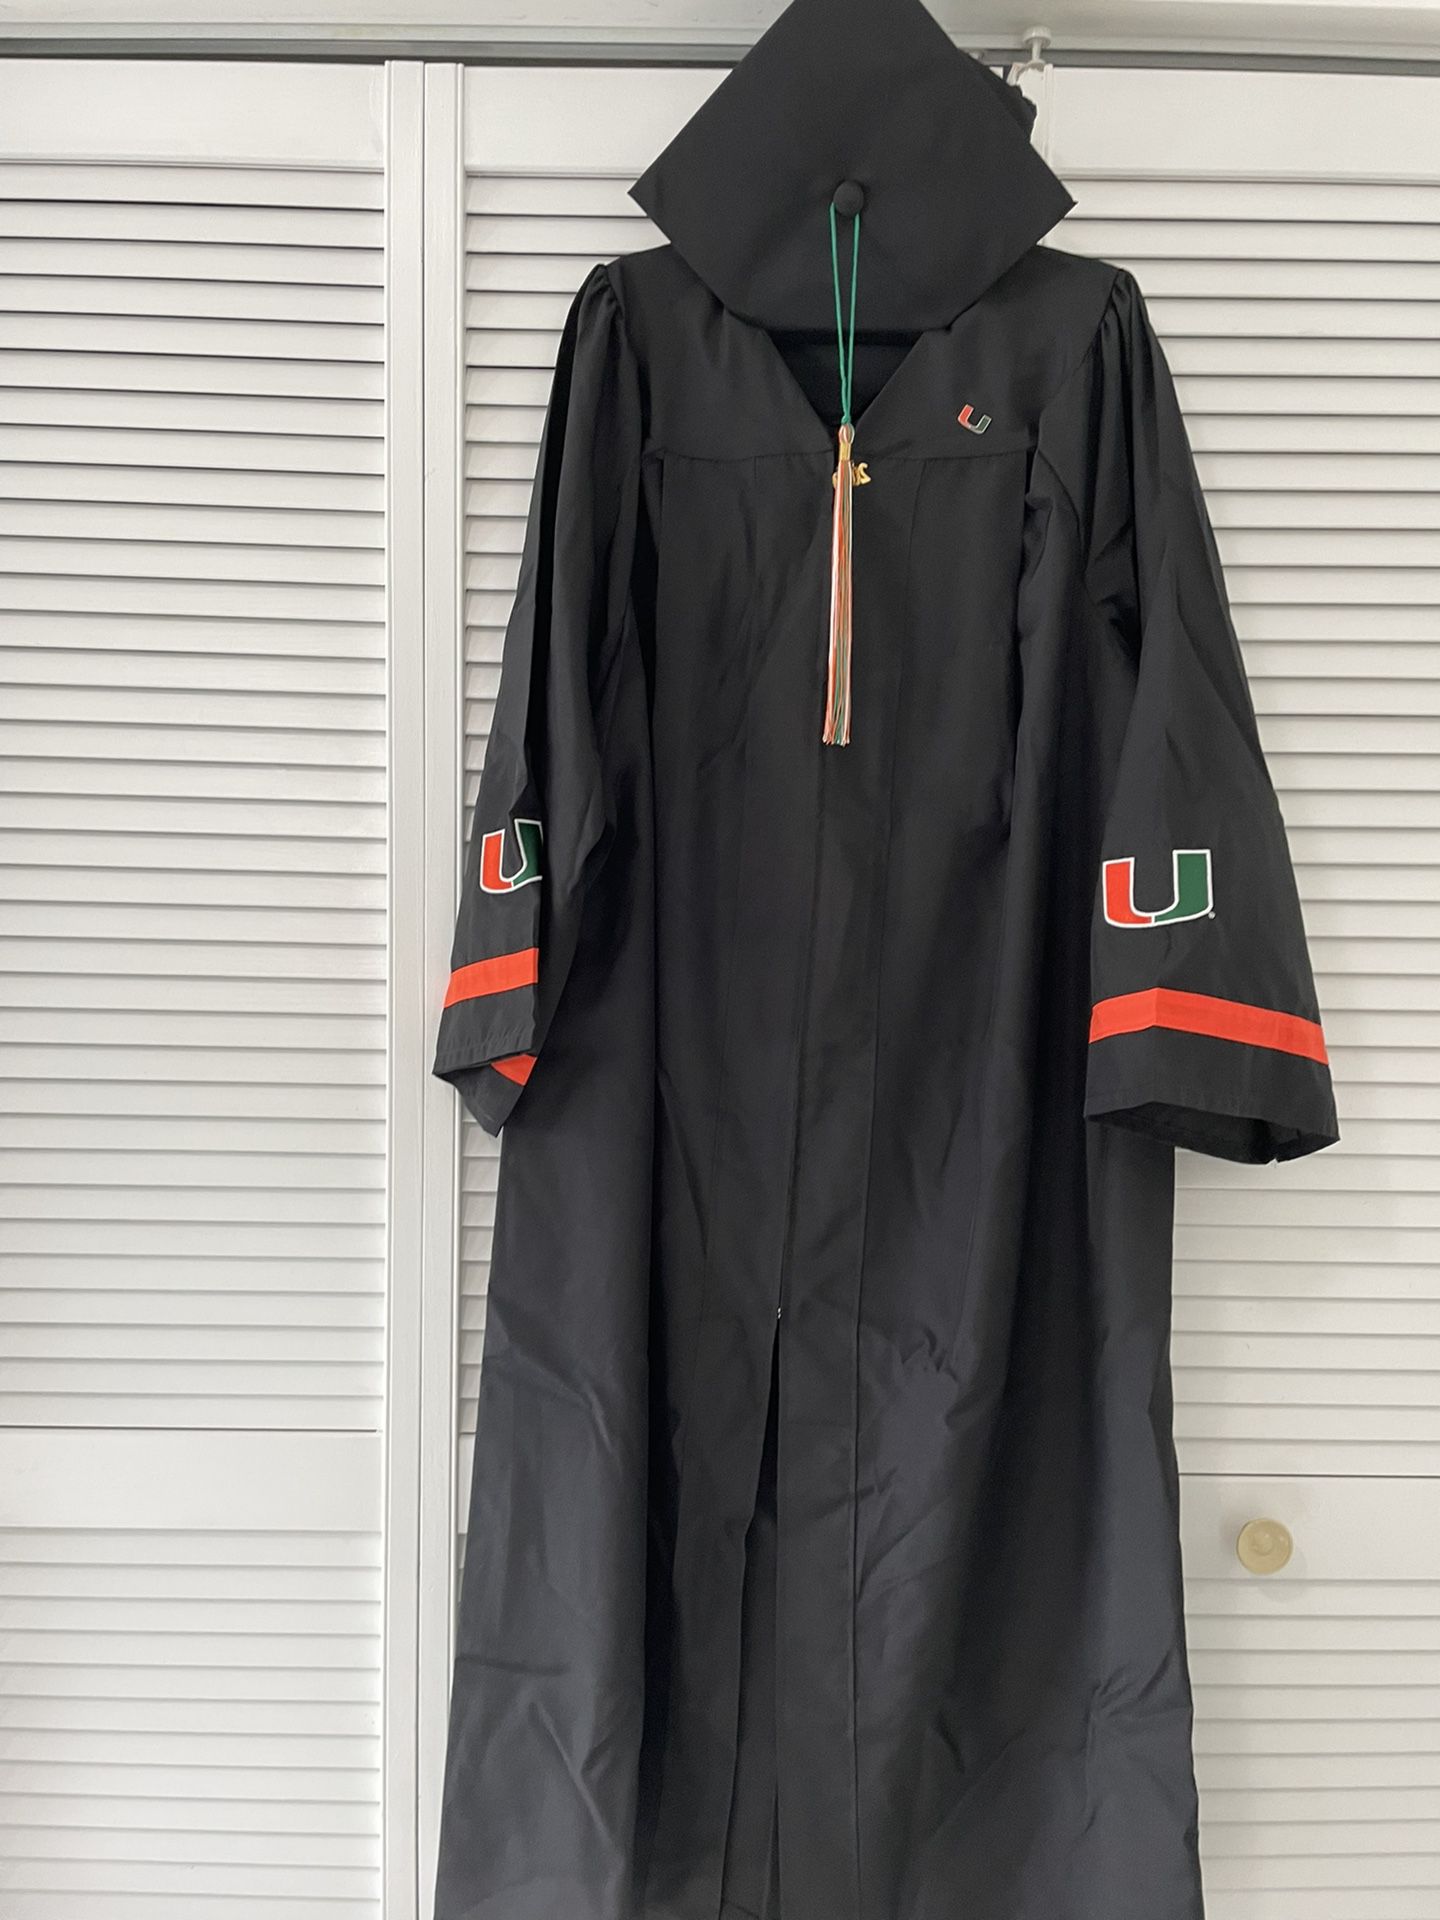 UM University Of Miami  graduation cap gown and tassel